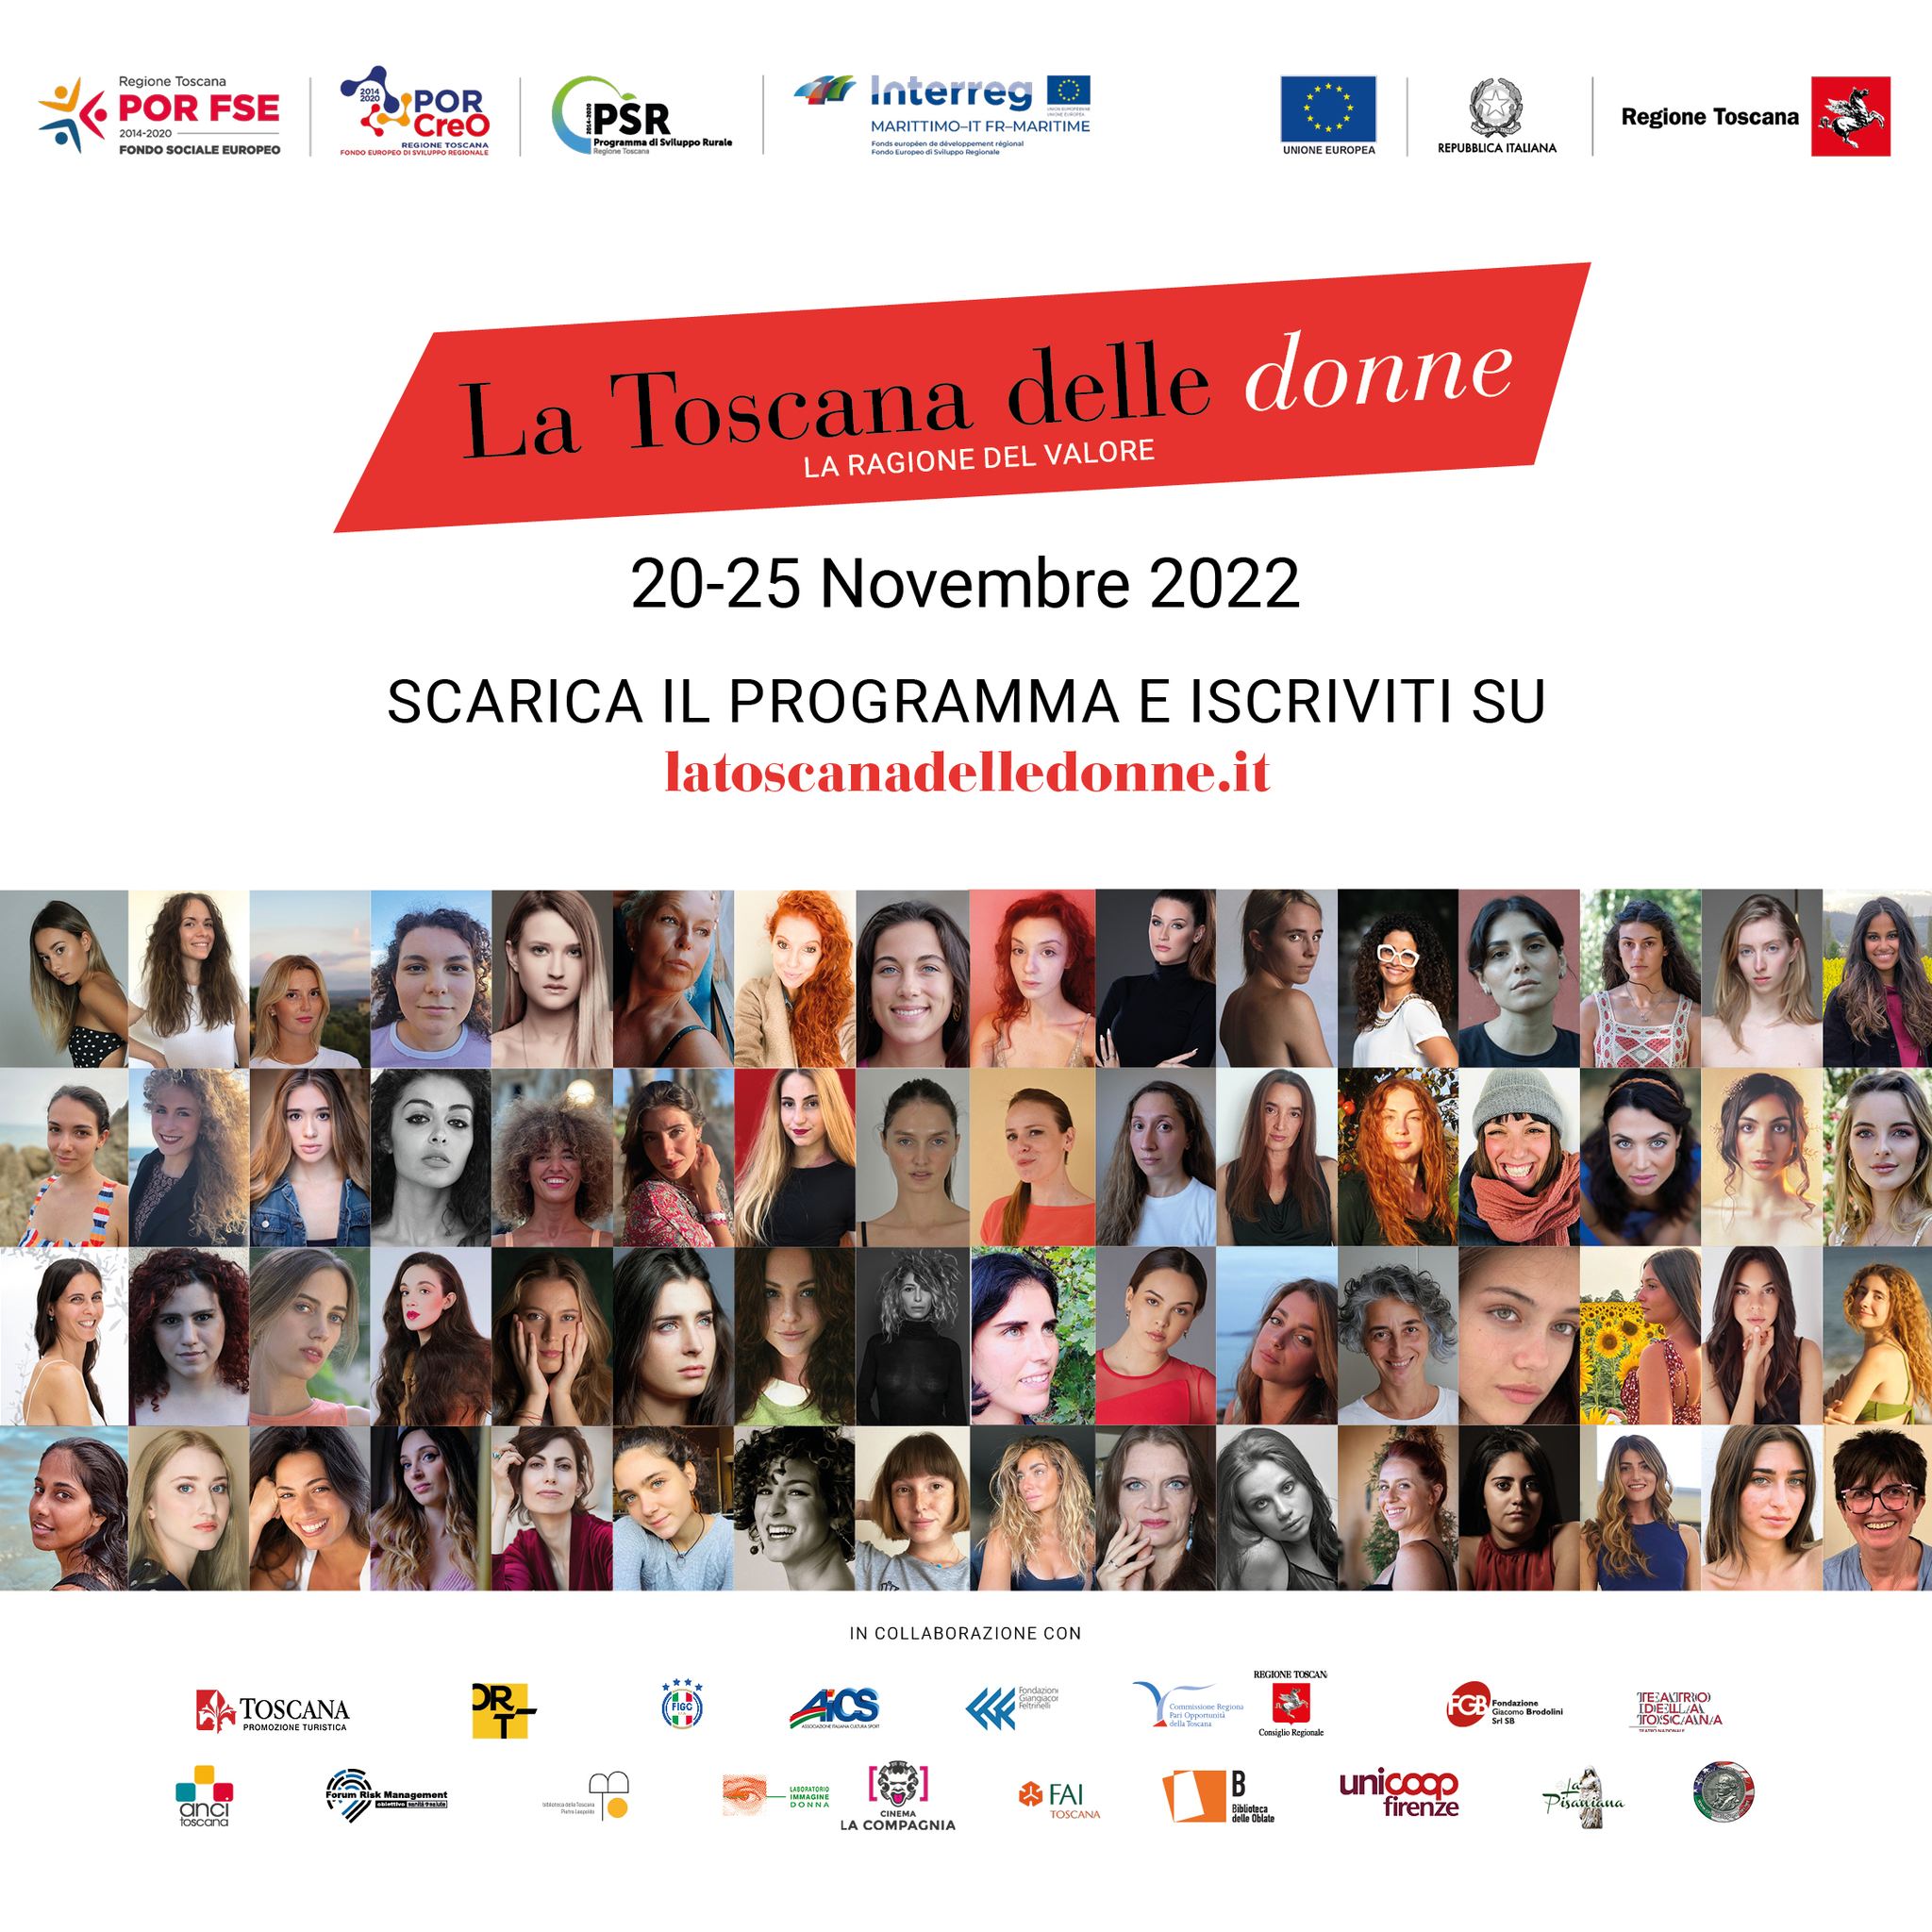 La Toscana delle donne, al via domenica 20 al Teatro Verdi di Firenze